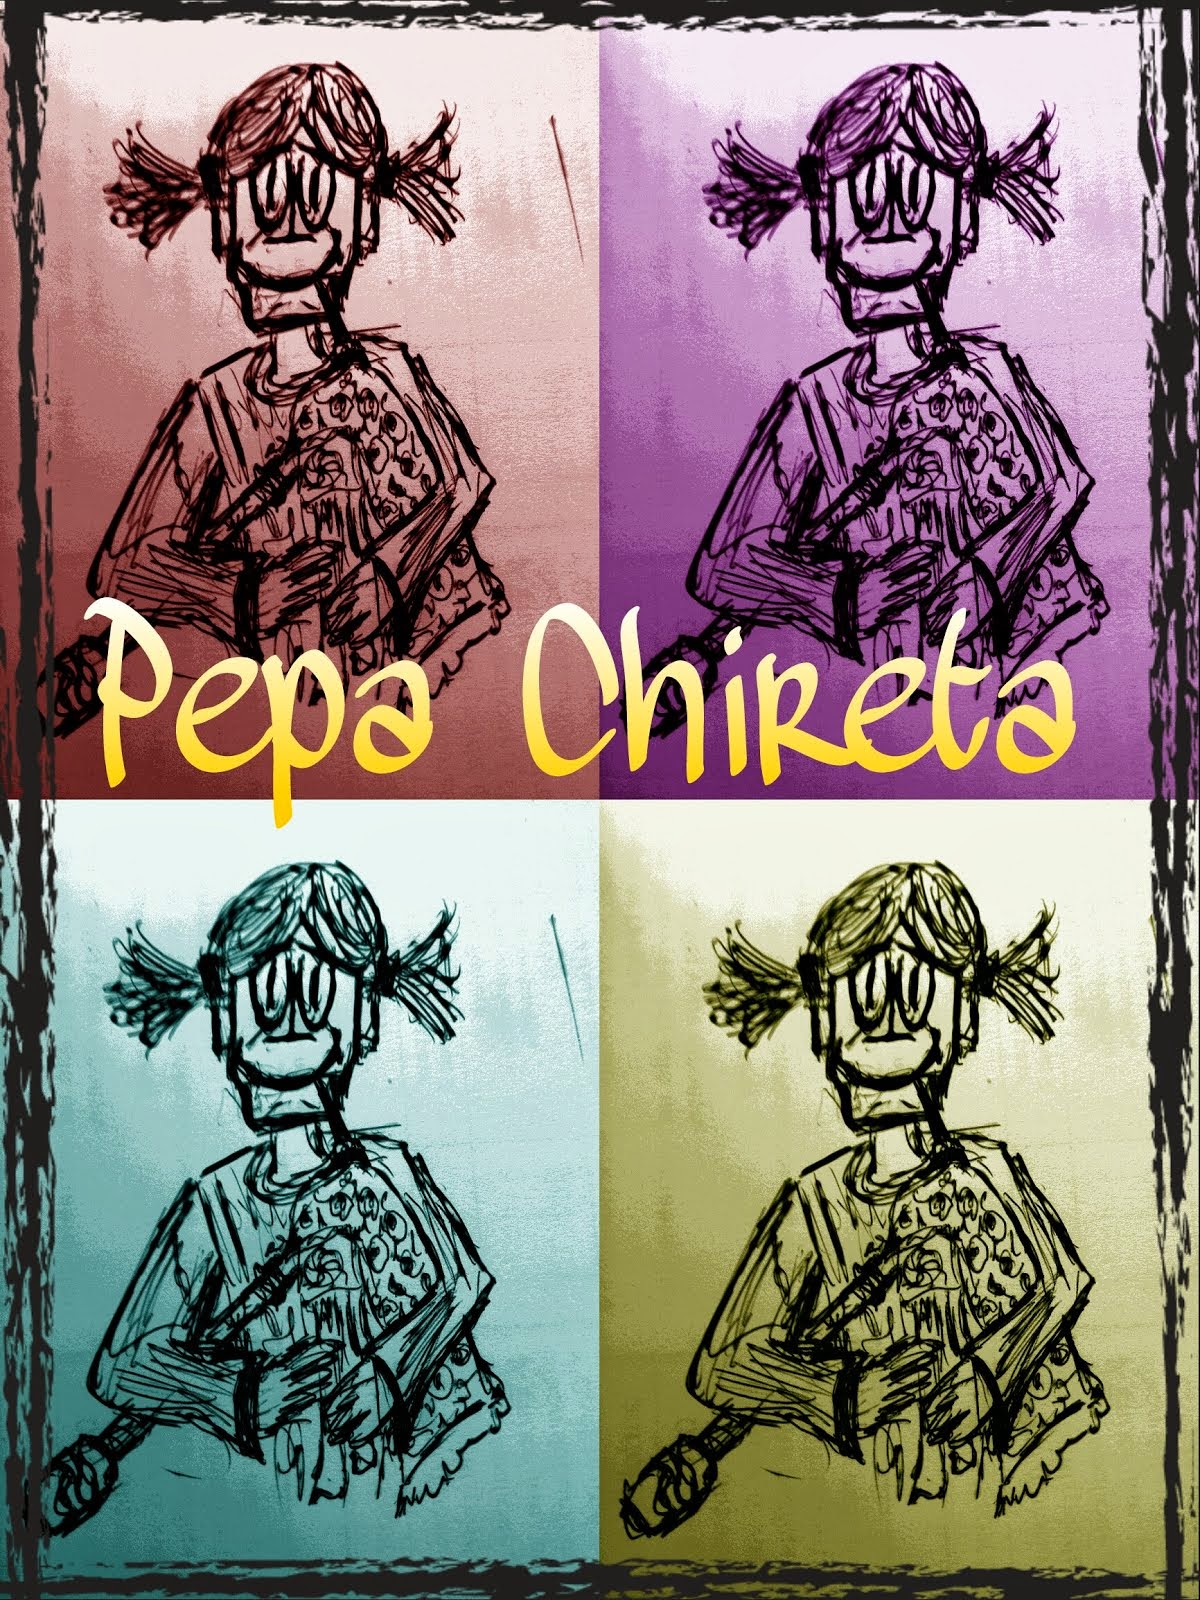 Pepa Chireta